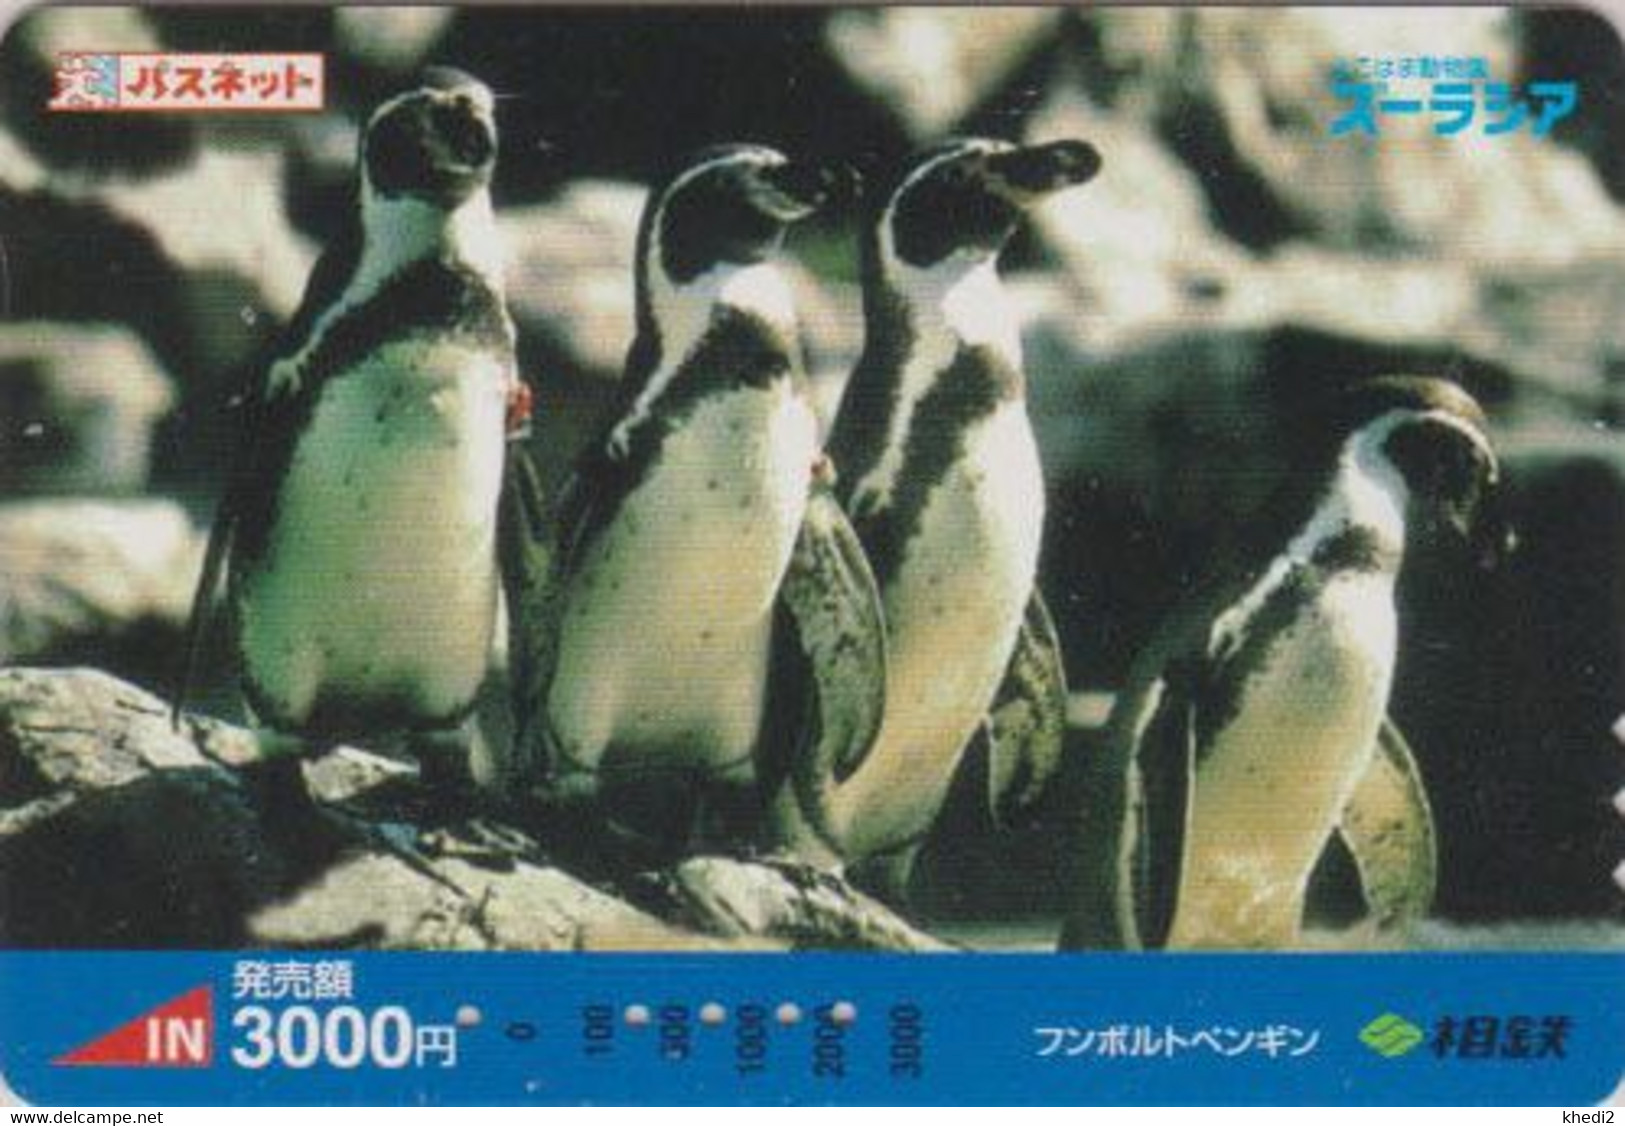 Carte Prépayée JAPON - ANIMAL - MANCHOT De HUMBOLDT - Pingouin - PENGUIN BIRD JAPAN Prepaid Sotetsu Card - 5316 - Pinguine